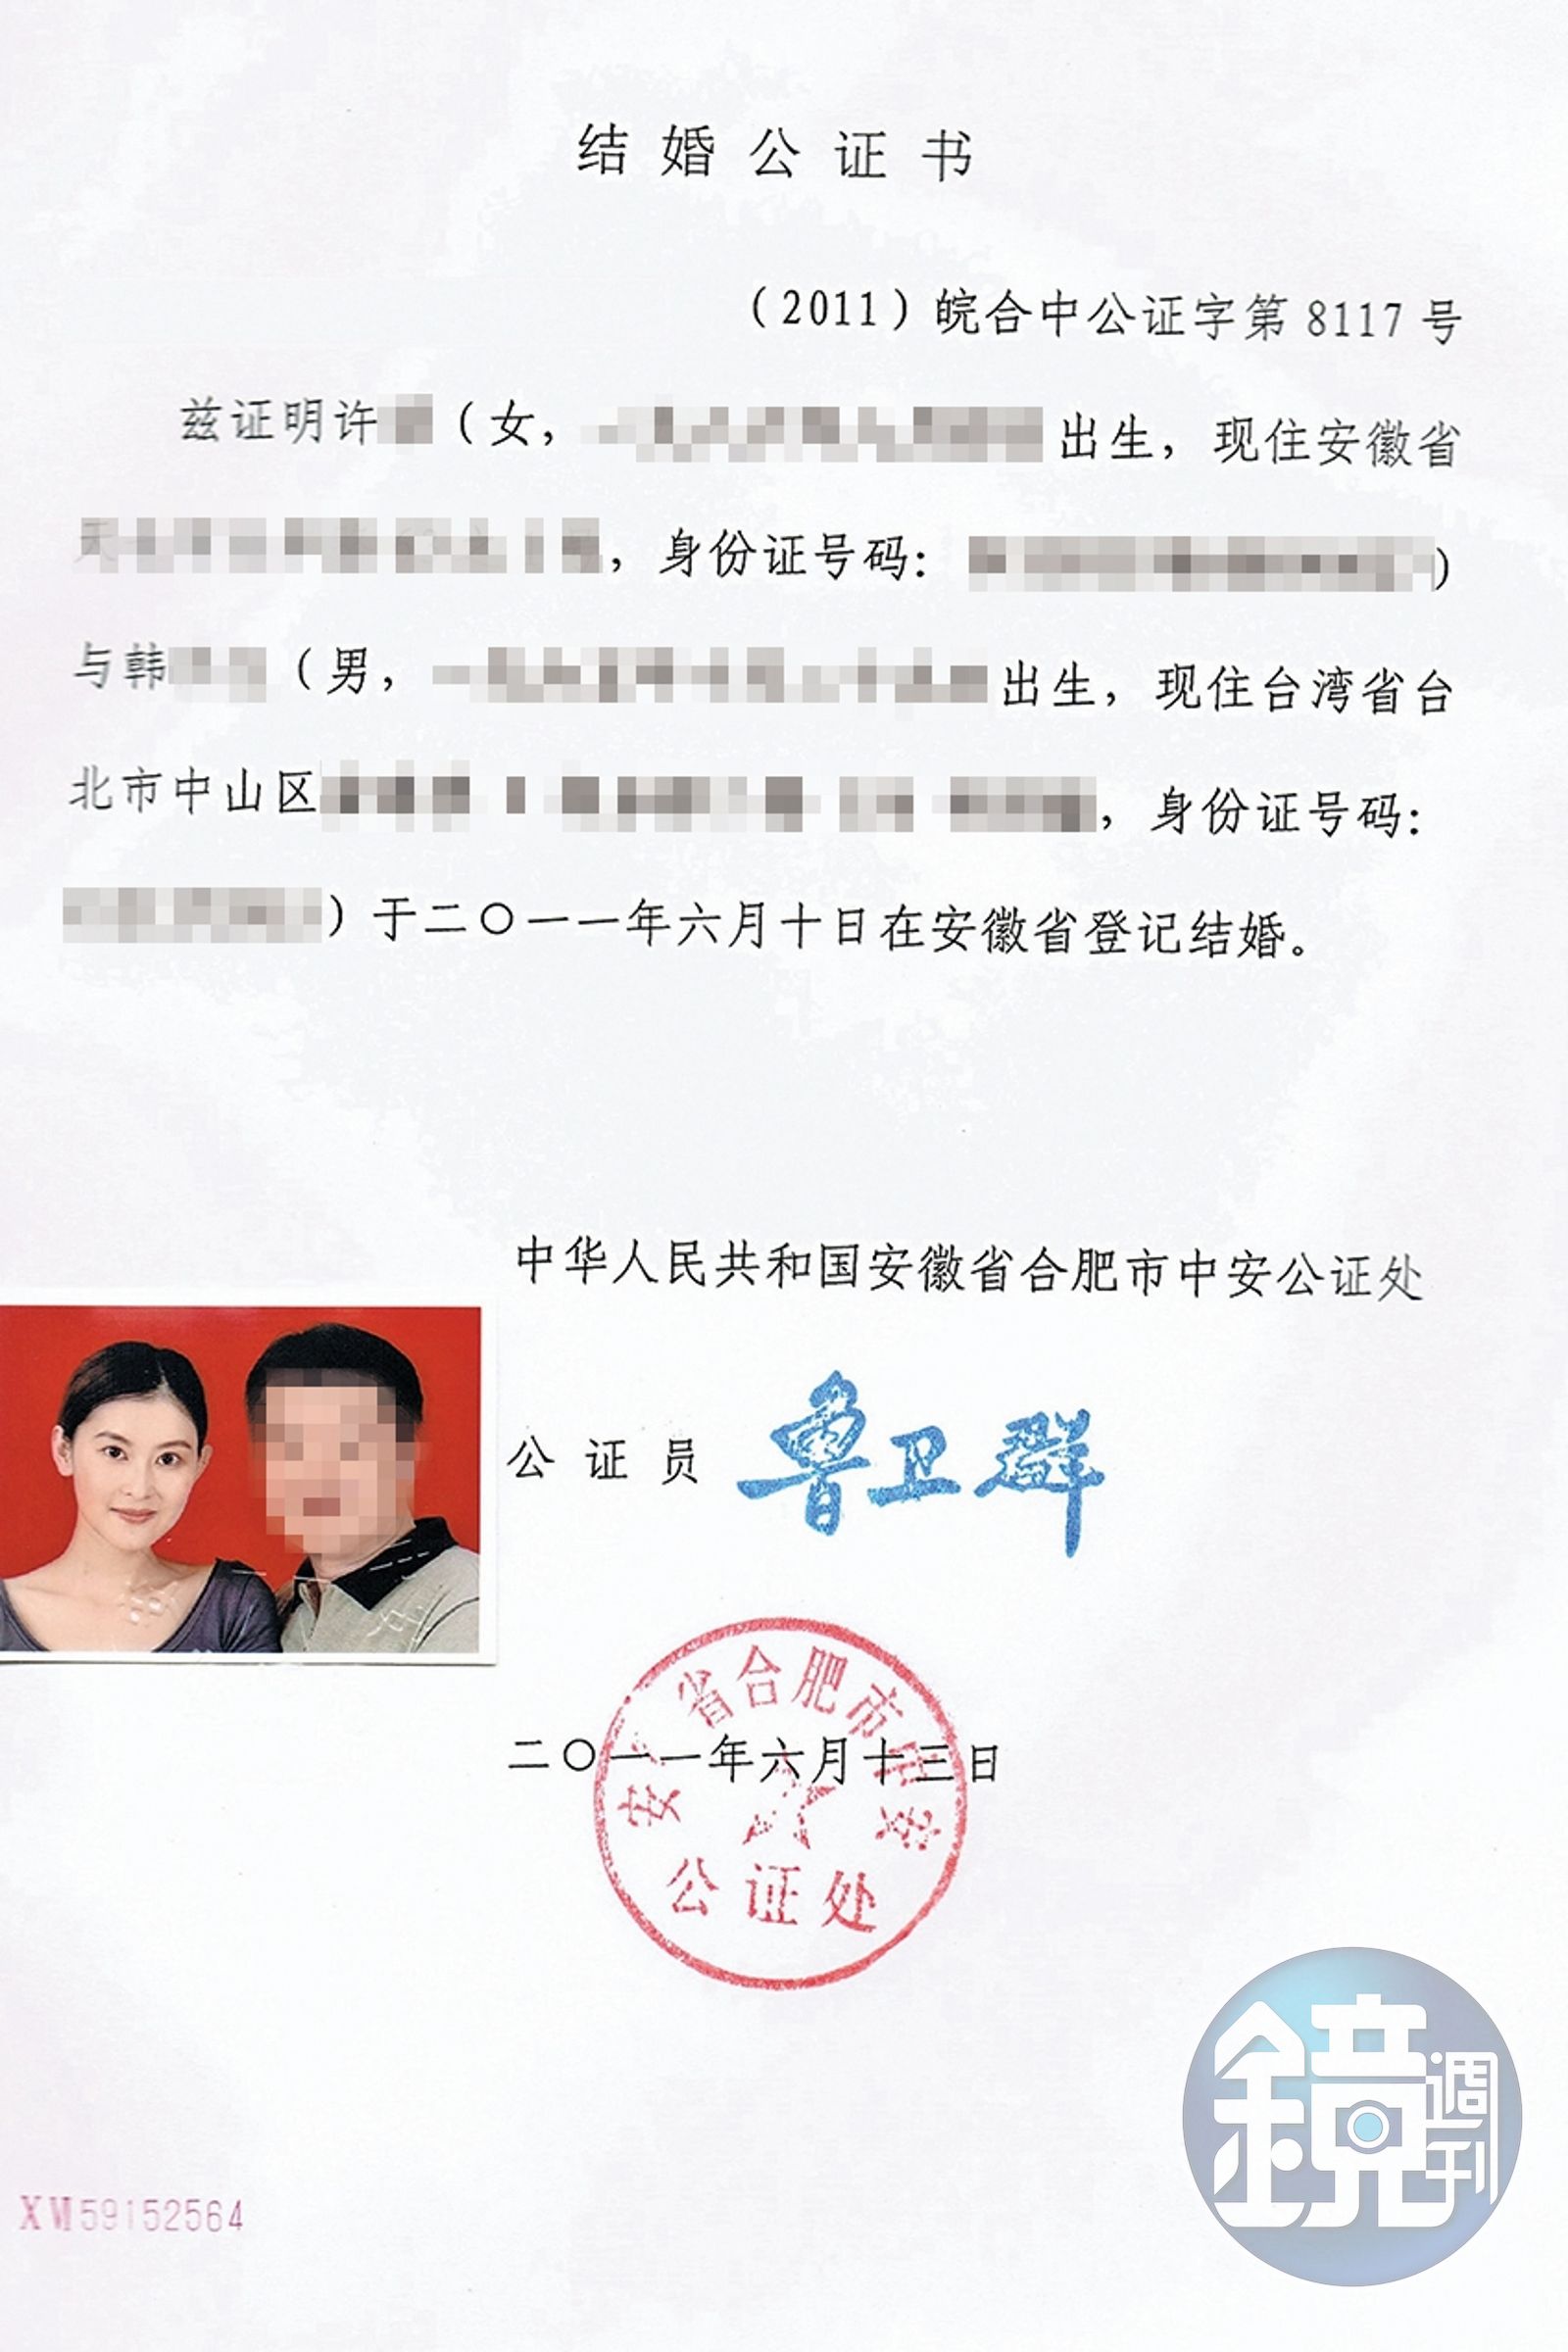 夏米雅與韓先生於2011年先在大陸安徽合肥結婚領證，之後回台灣登記結婚